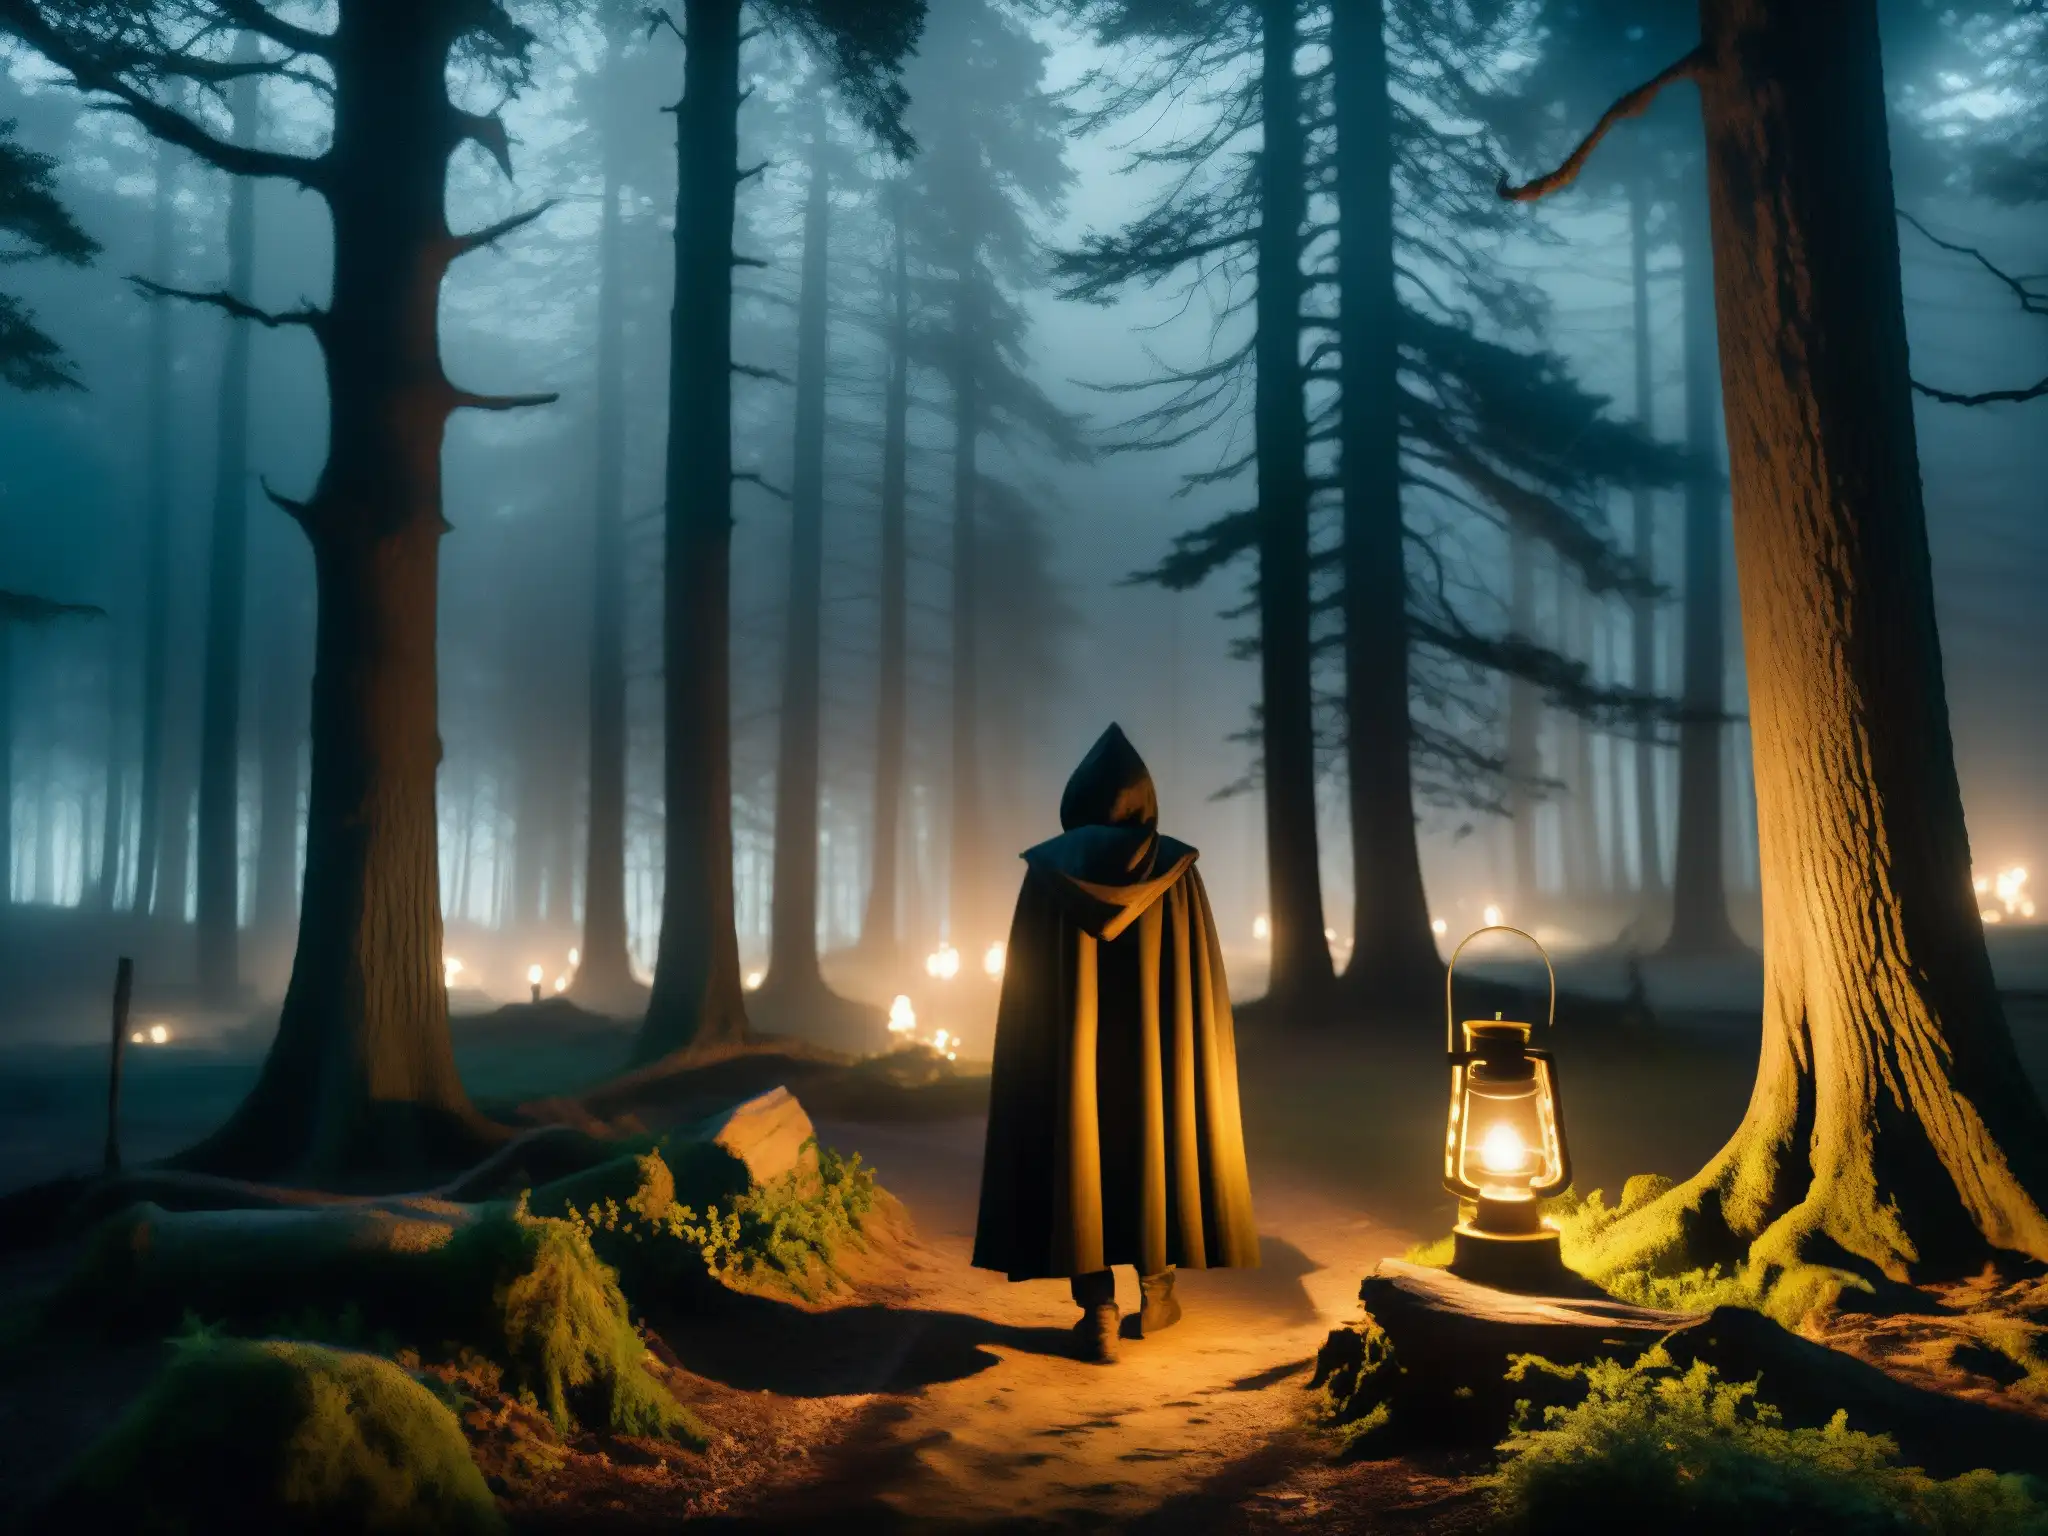 Un misterioso bosque nocturno con árboles retorcidos y una figura con capa sosteniendo una linterna titilante